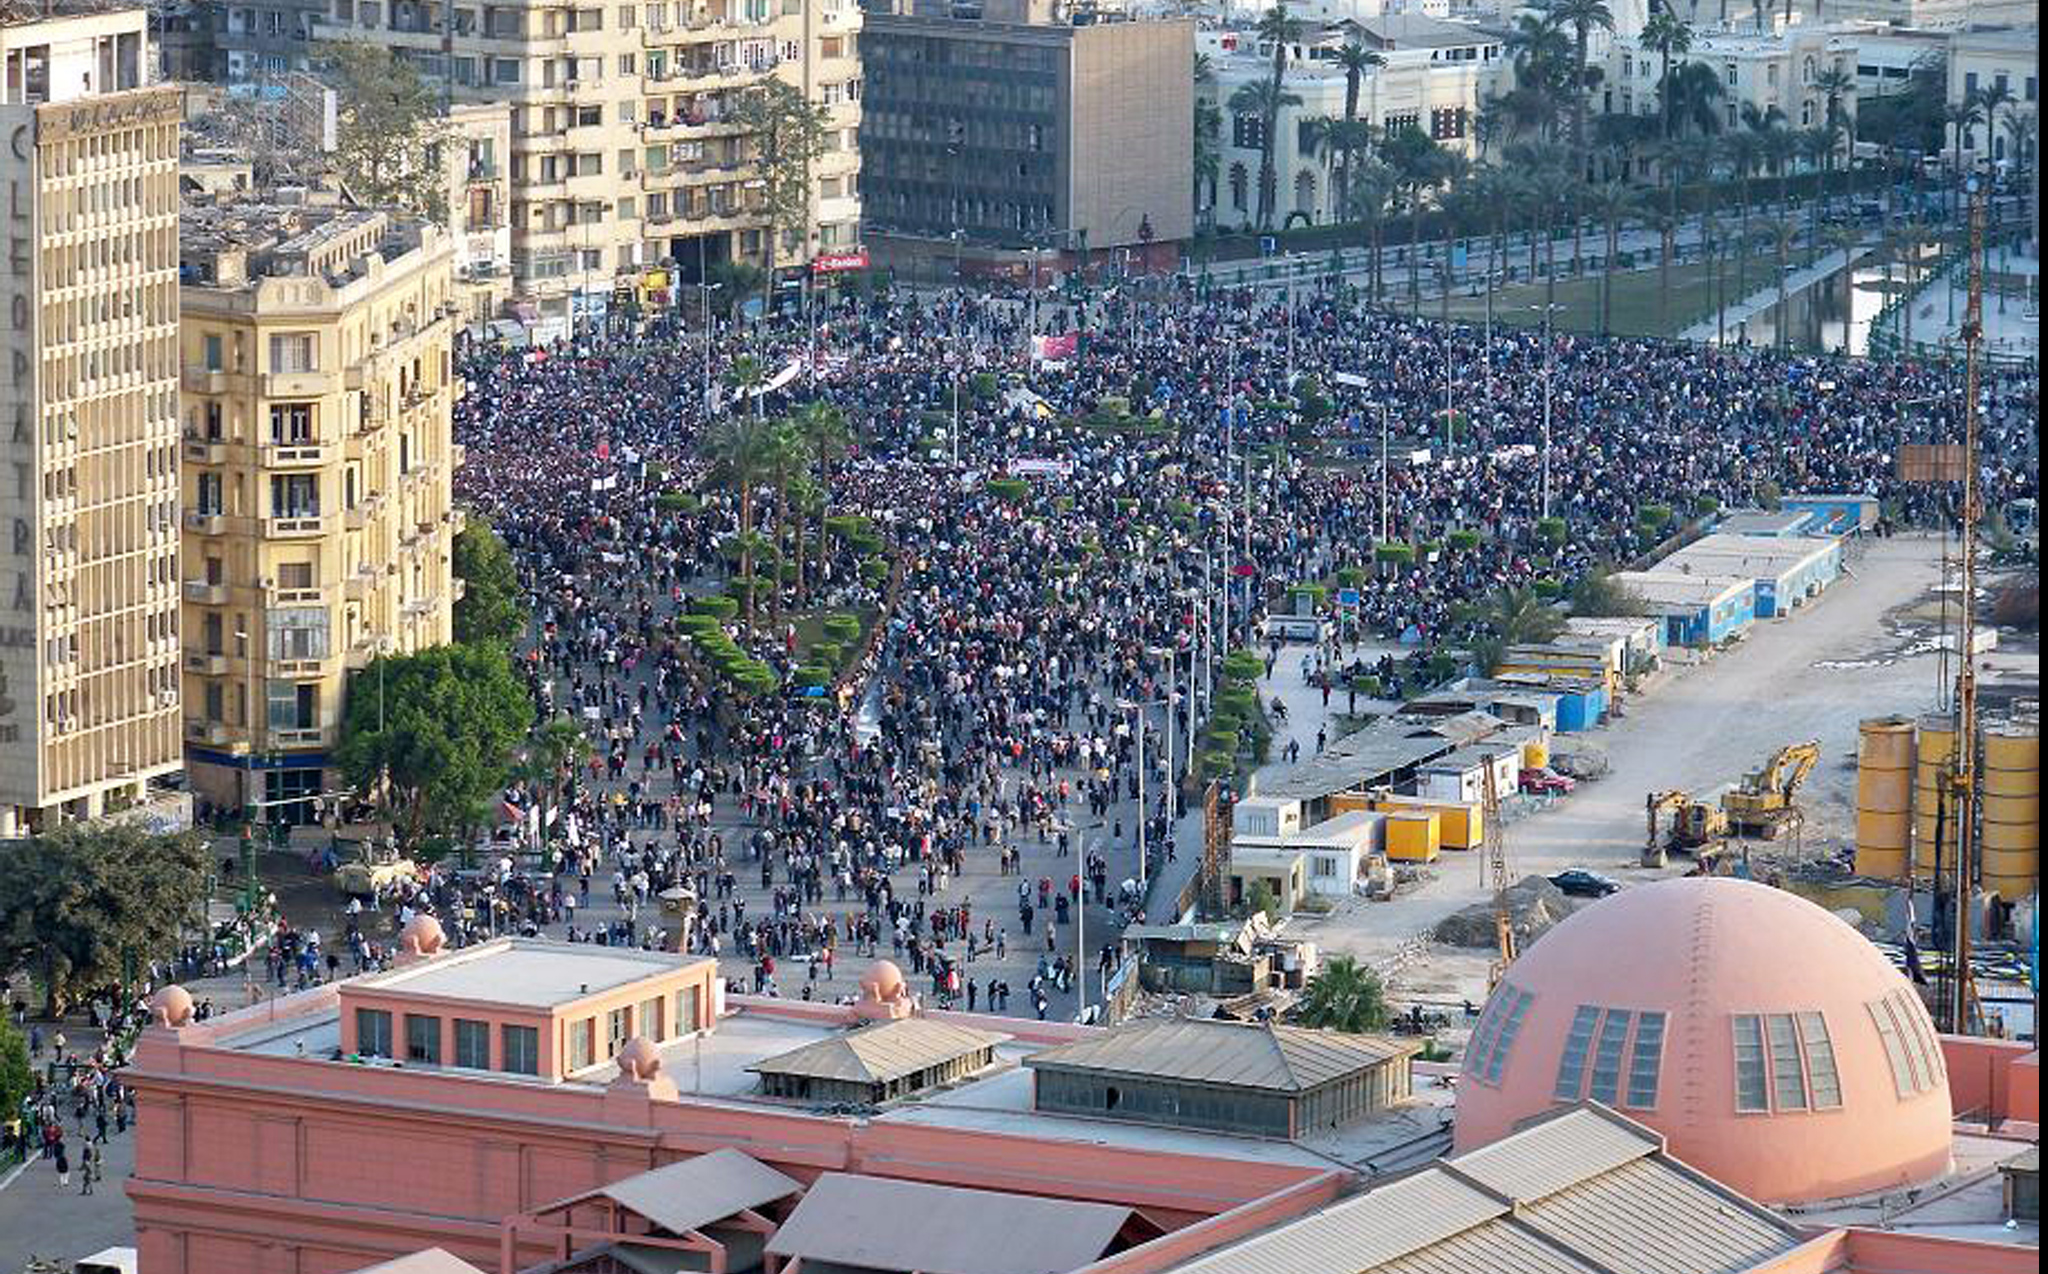 Le 1er février, une manifestation monstre est organisée contre le pouvoir avec pour slogan : «Le peuple veut la chute du Rais» <br>(du président Hosni Moubarak, ndlr). Tahrir est envahie par un million de personnes, selon les organisateurs. (Crédit photo : Adel Gastel)